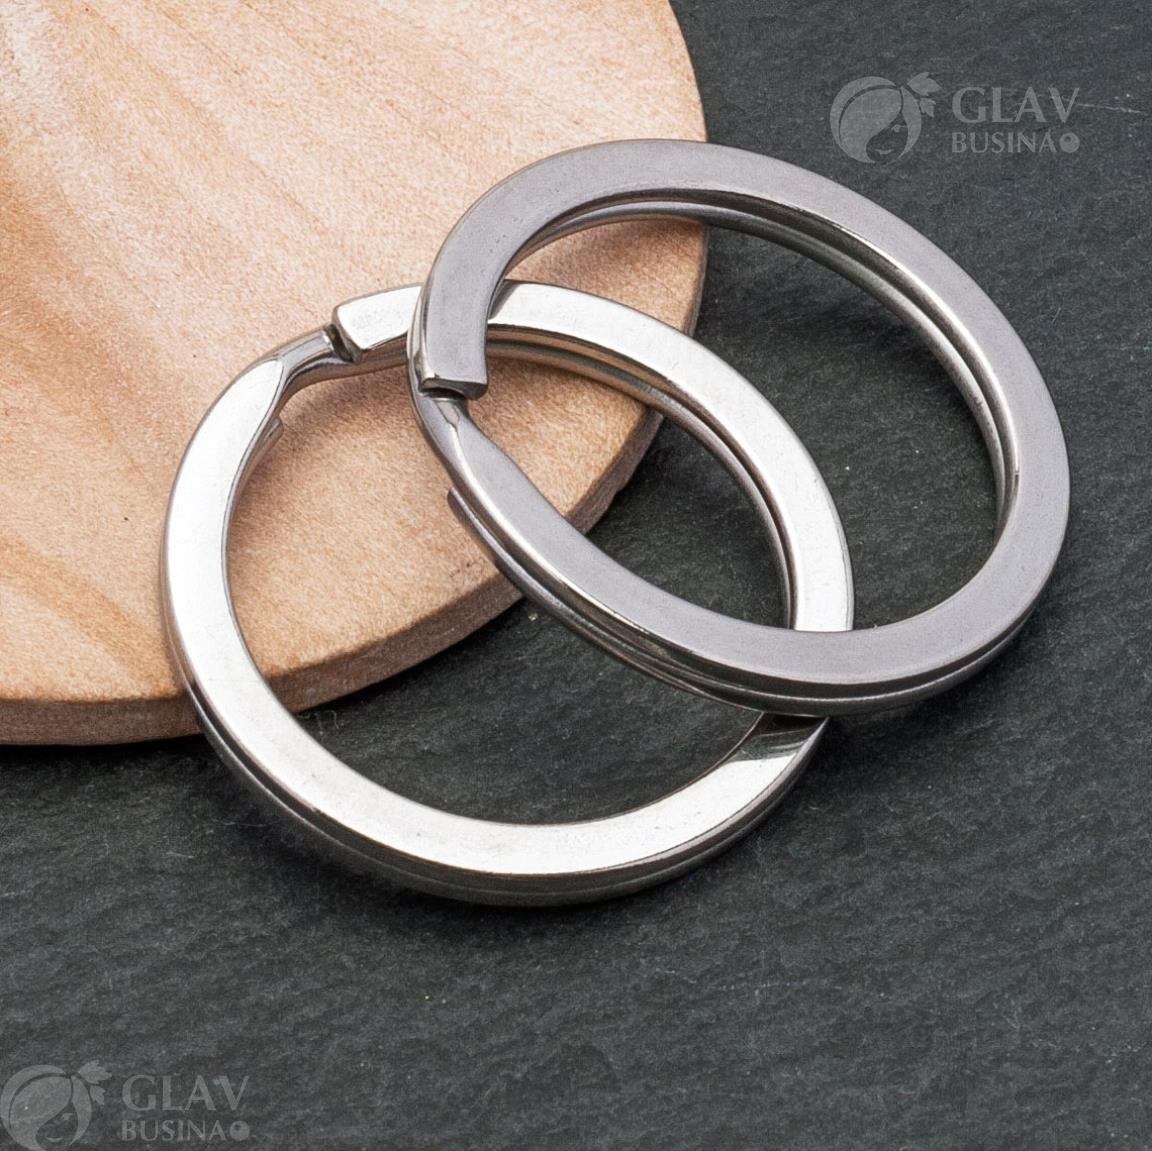 Привлекательное кольцо для ключей из полированной нержавеющей стали, размером 28х2.8х2.4мм. Срок службы неограничен. Идеальное решение для организации ключей. Бережно сохраняет от царапин, сохраняя их в идеальном состоянии.